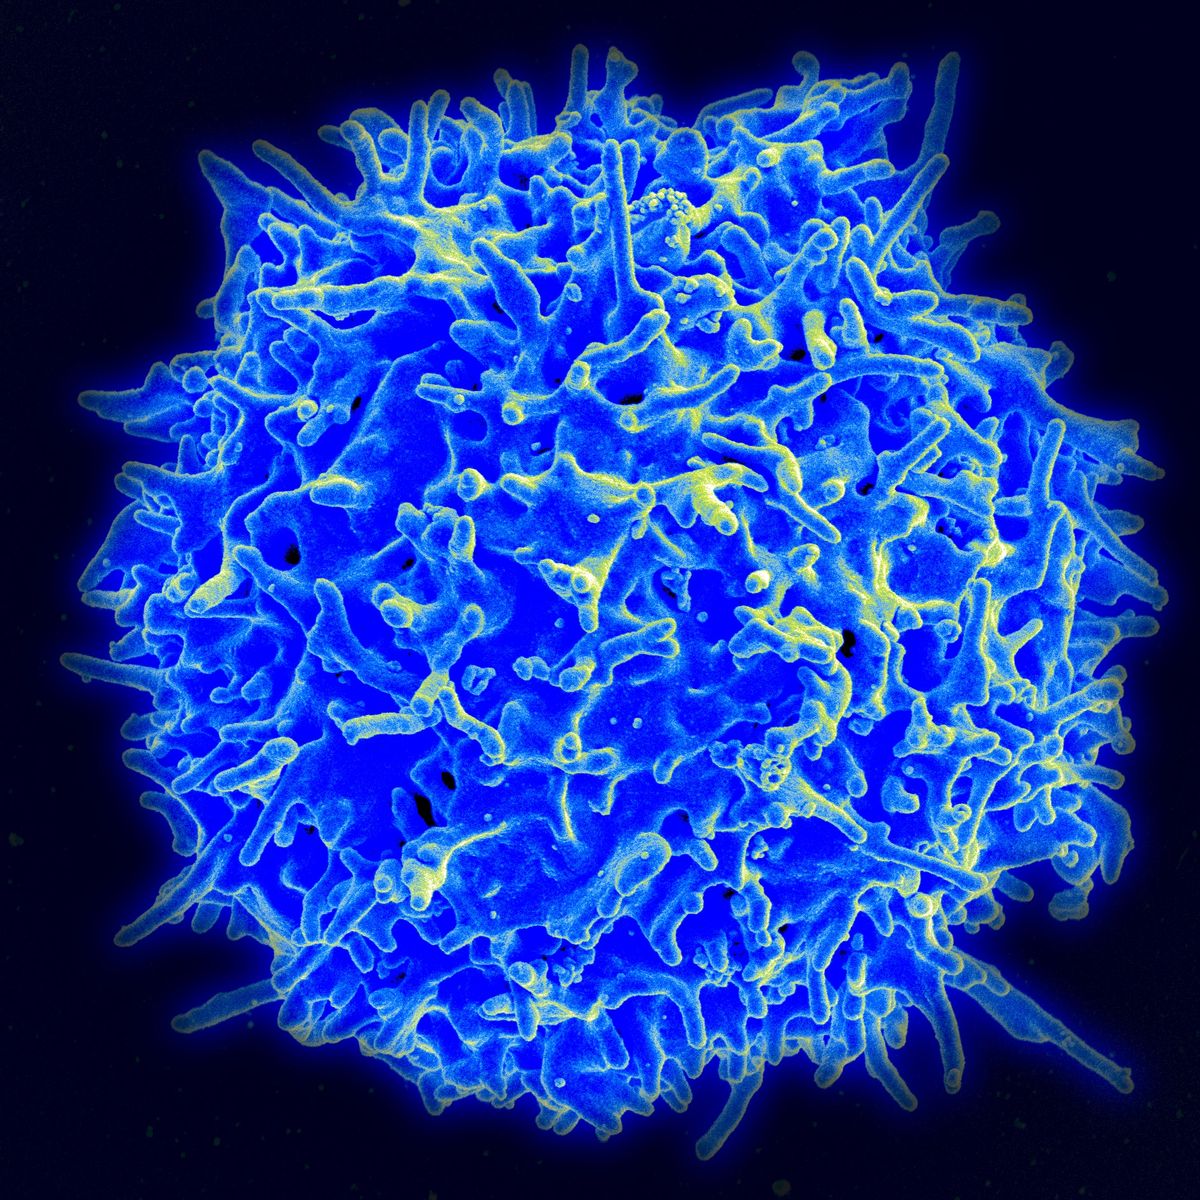 Mechanisms of T Cell Immunity